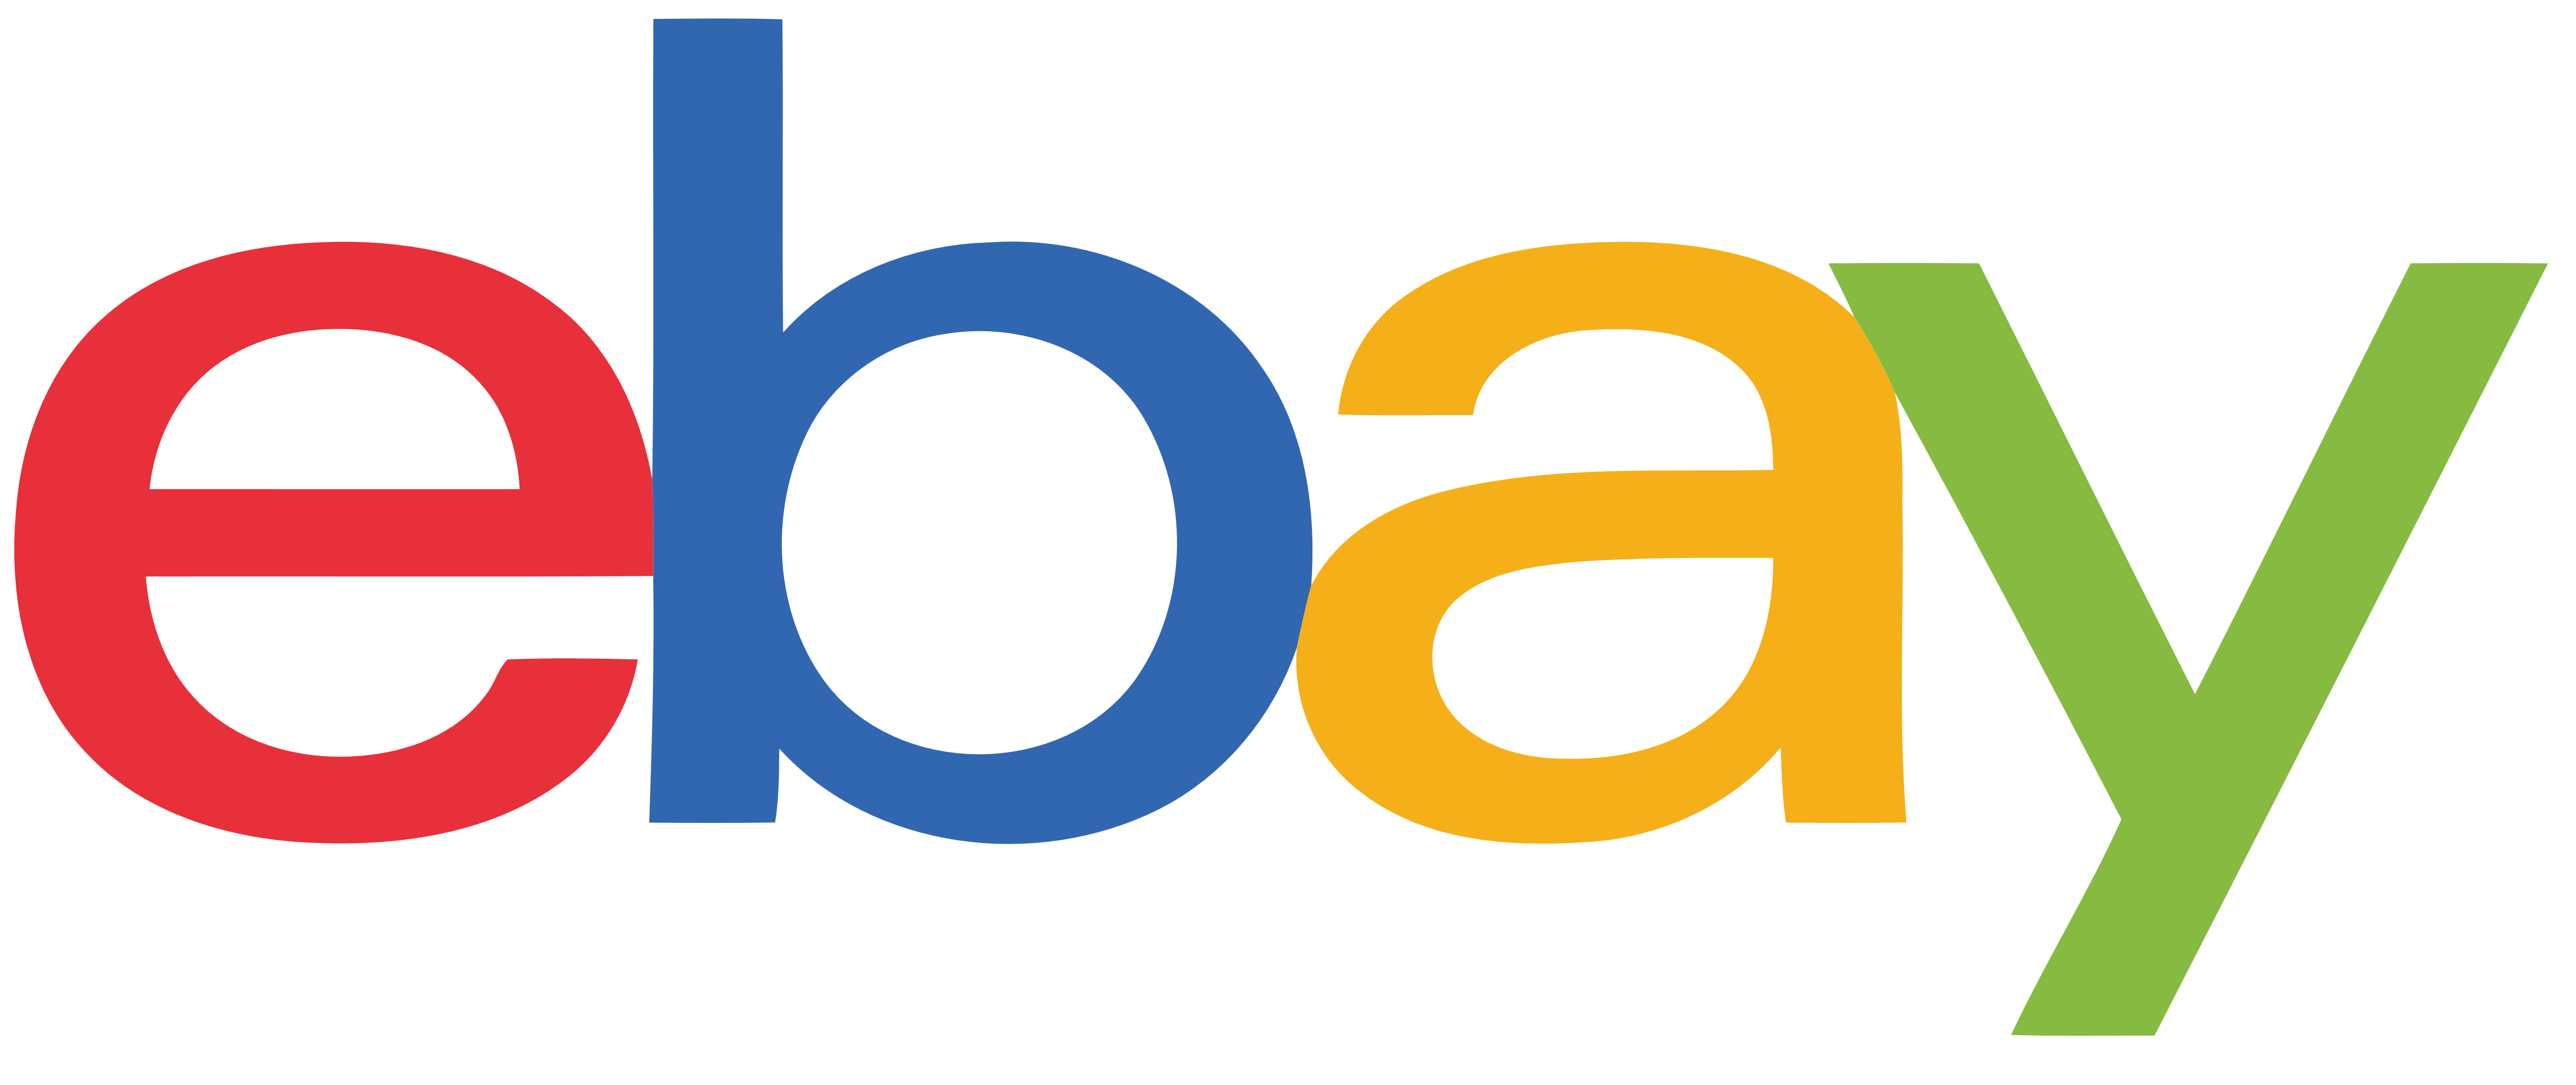 eBay logo, logotype